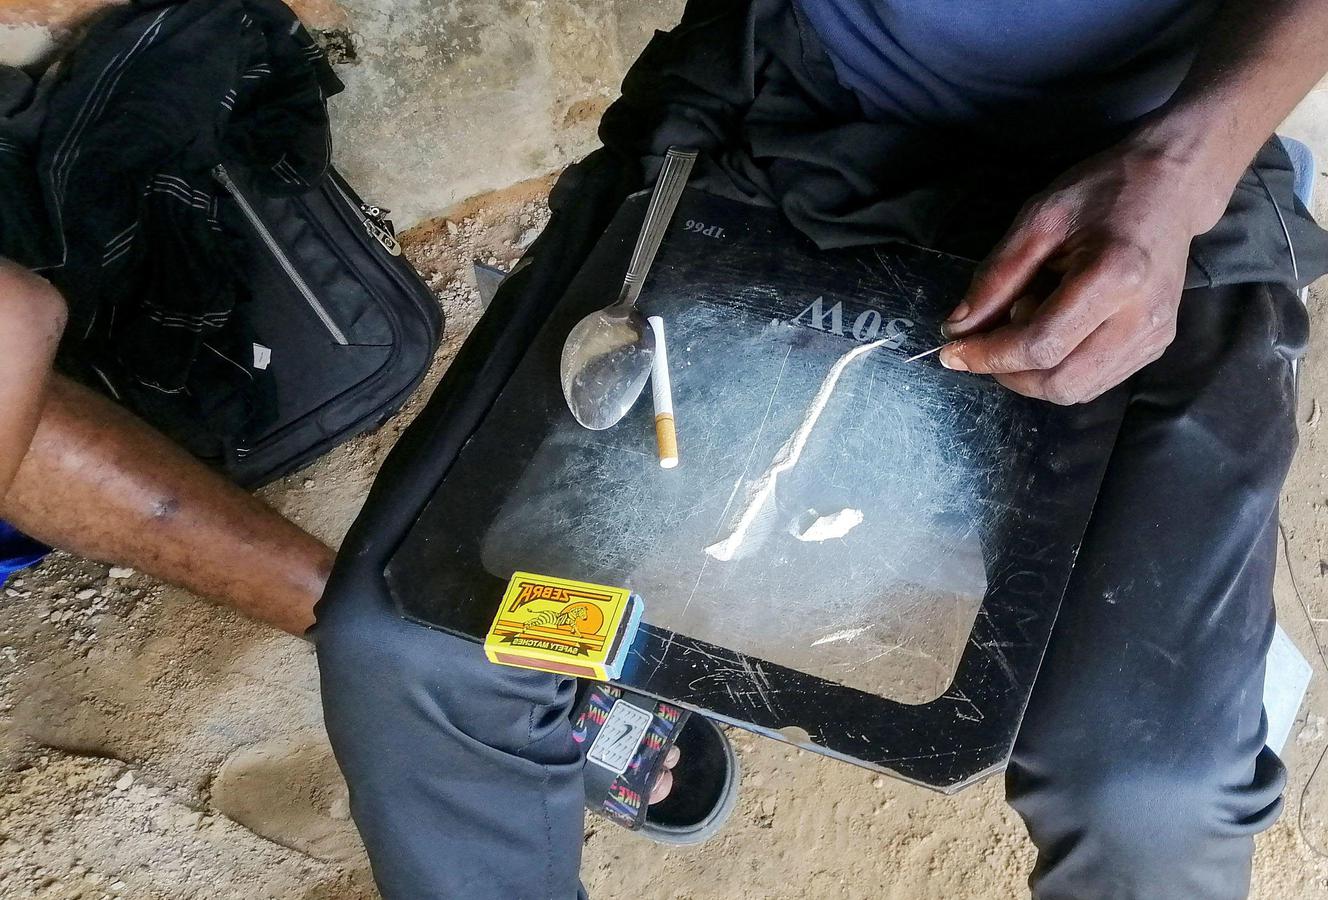 Ma túy Bombé đang trở thành thứ được nhiều thanh niên ở Kinshasa, Congo, săn tìm. Ảnh: Reuters